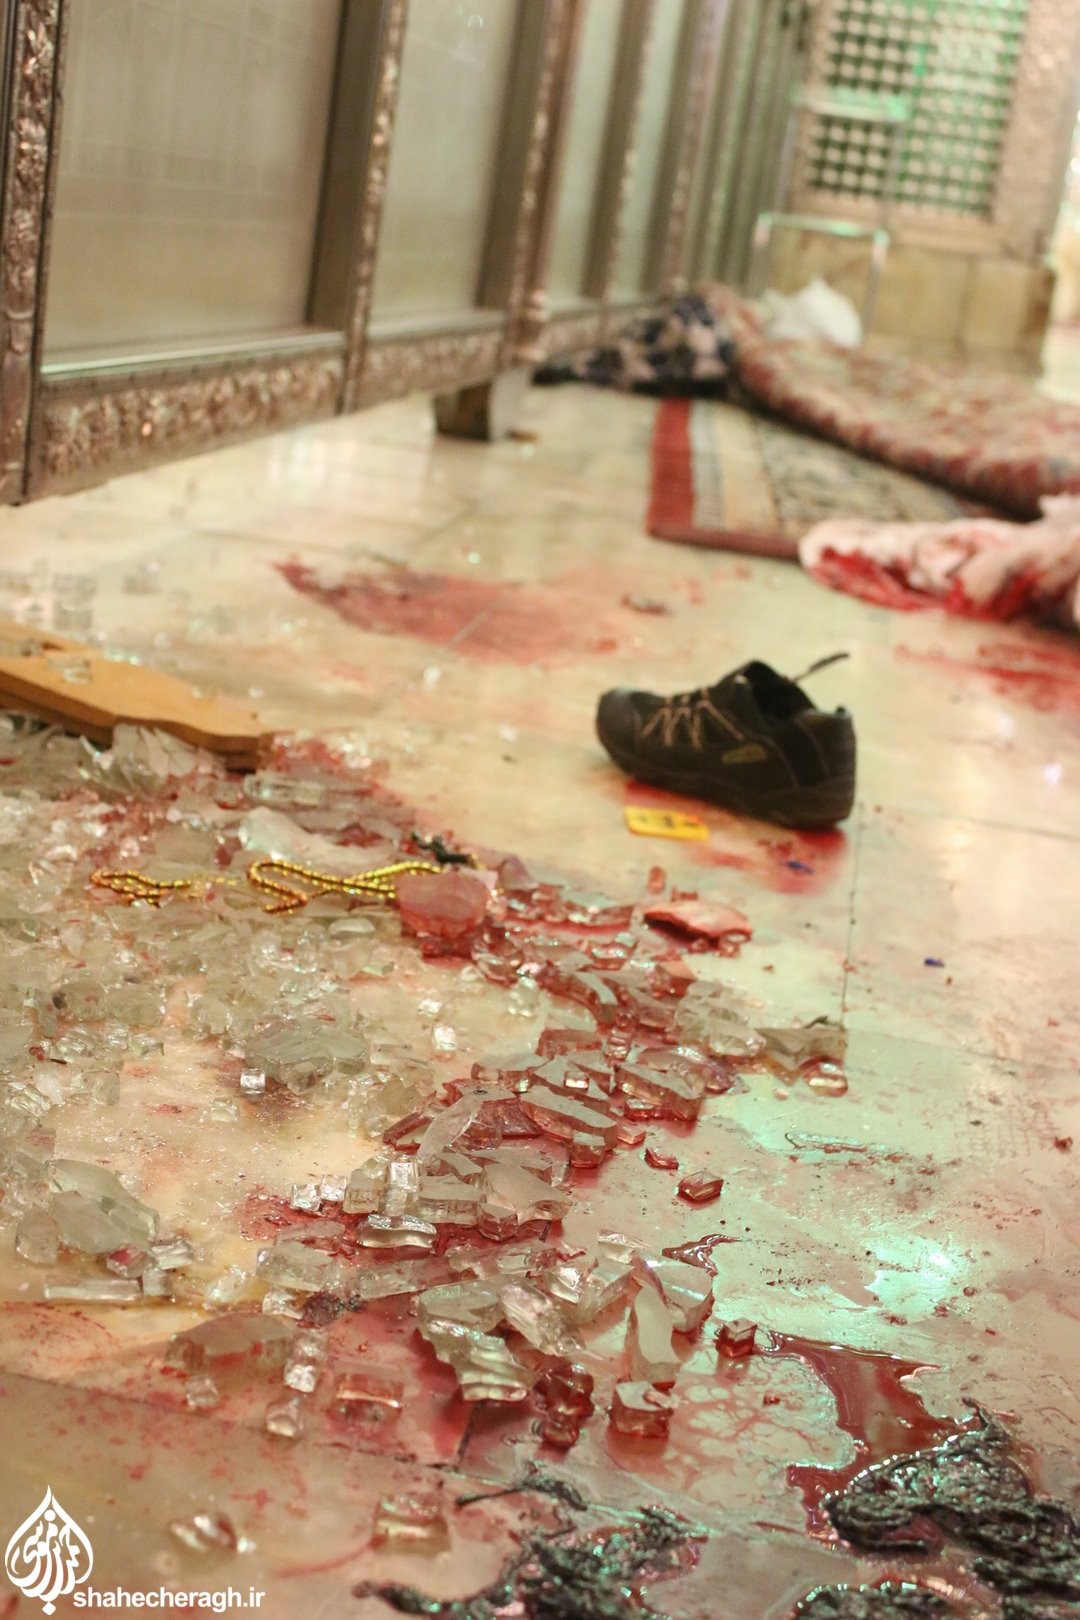 В Иране открыли стрельбу у мавзолея Шах-Черах: 15 погибших, десятки раненых (фото) - 6 - изображение